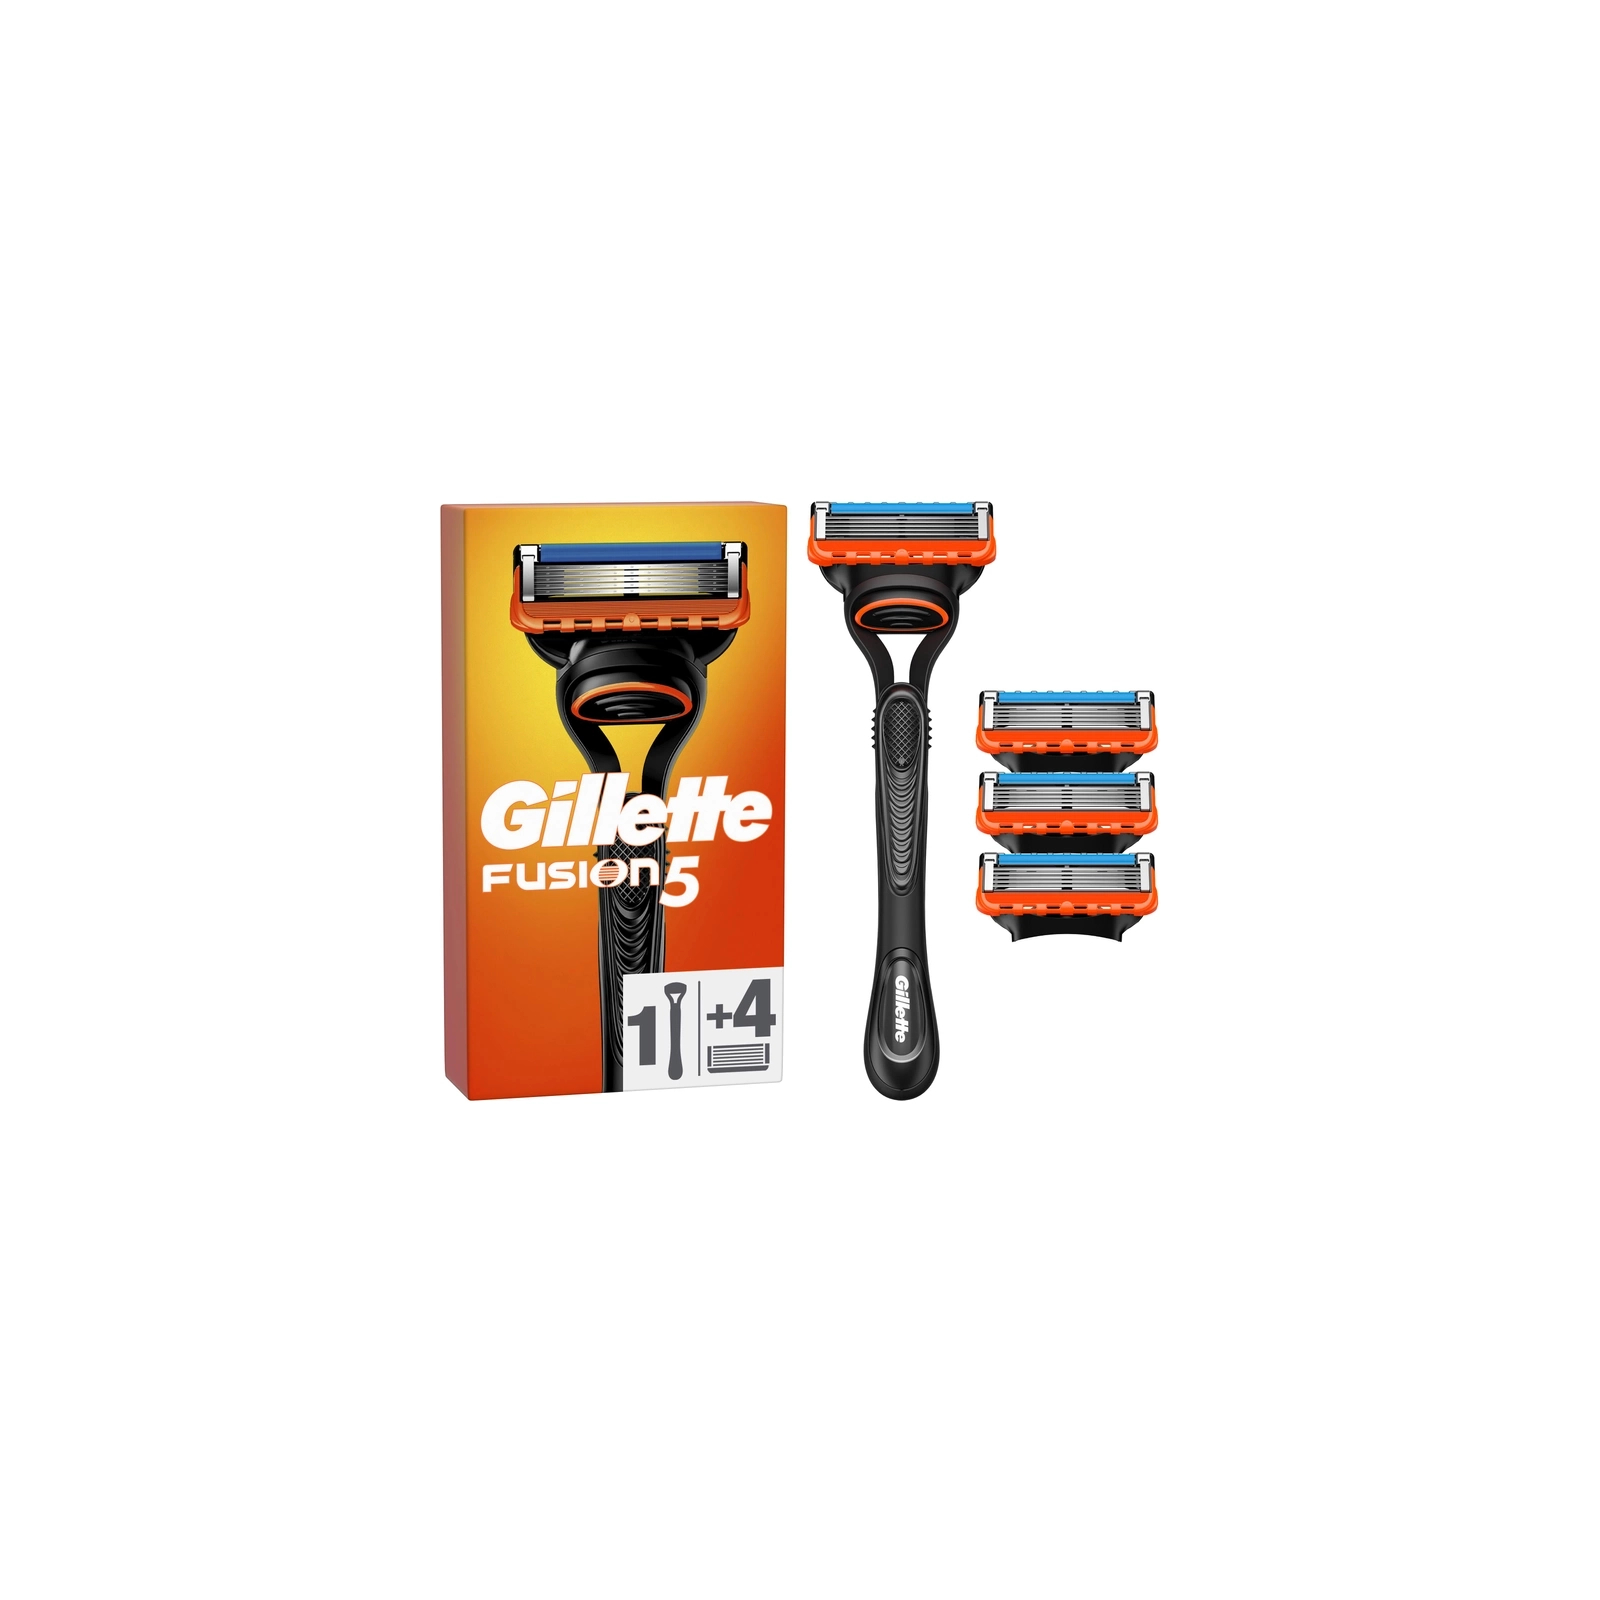 Бритва Gillette Fusion5 с 2 сменными картриджами (7702018874125/7702018866946)